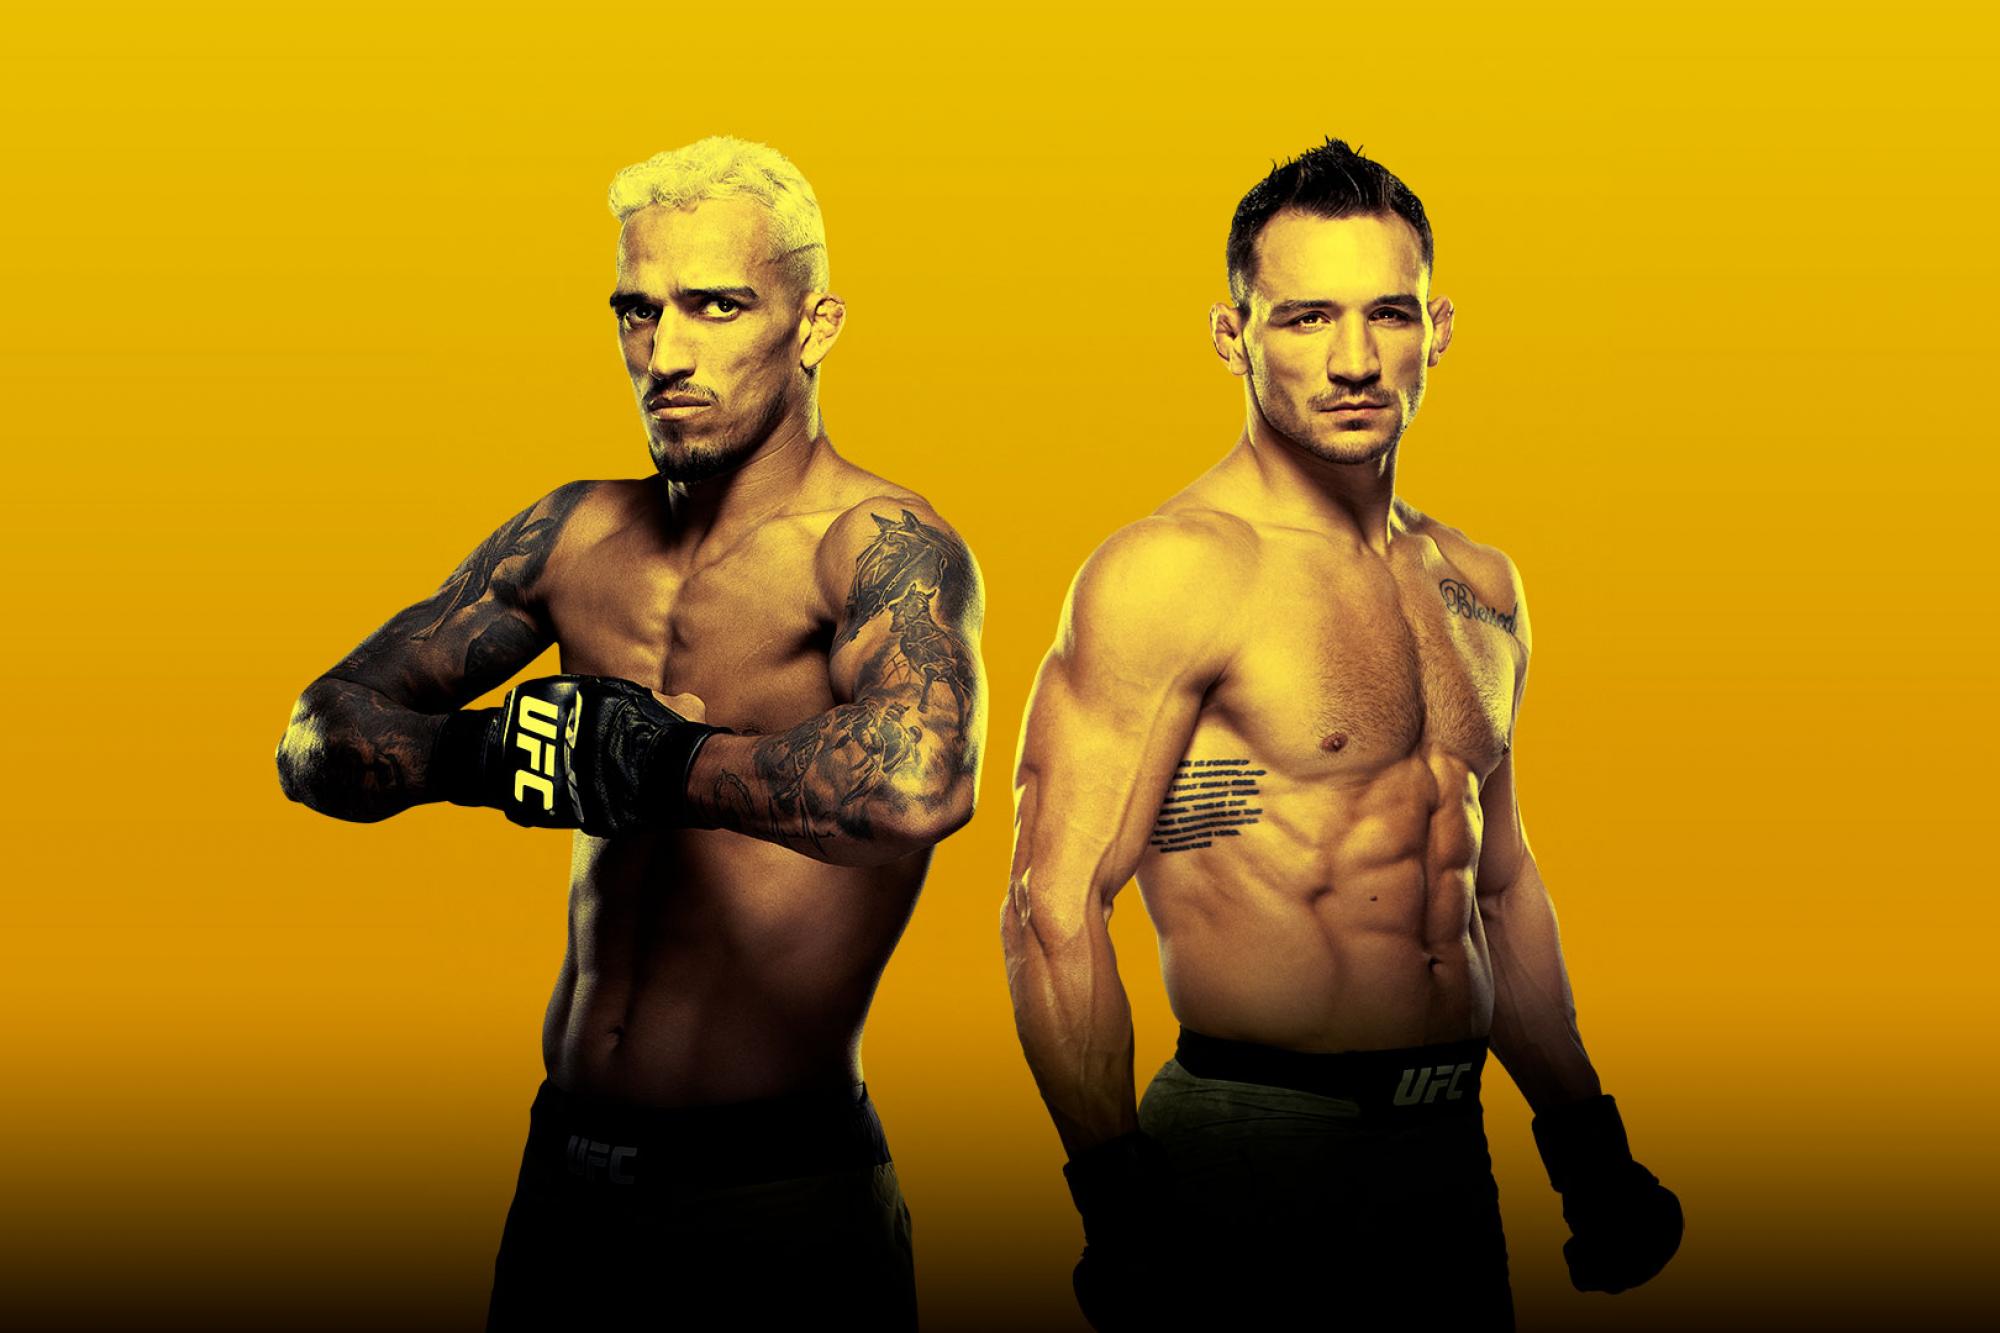 UFC 262 - Las Vegas - Poster et affiche